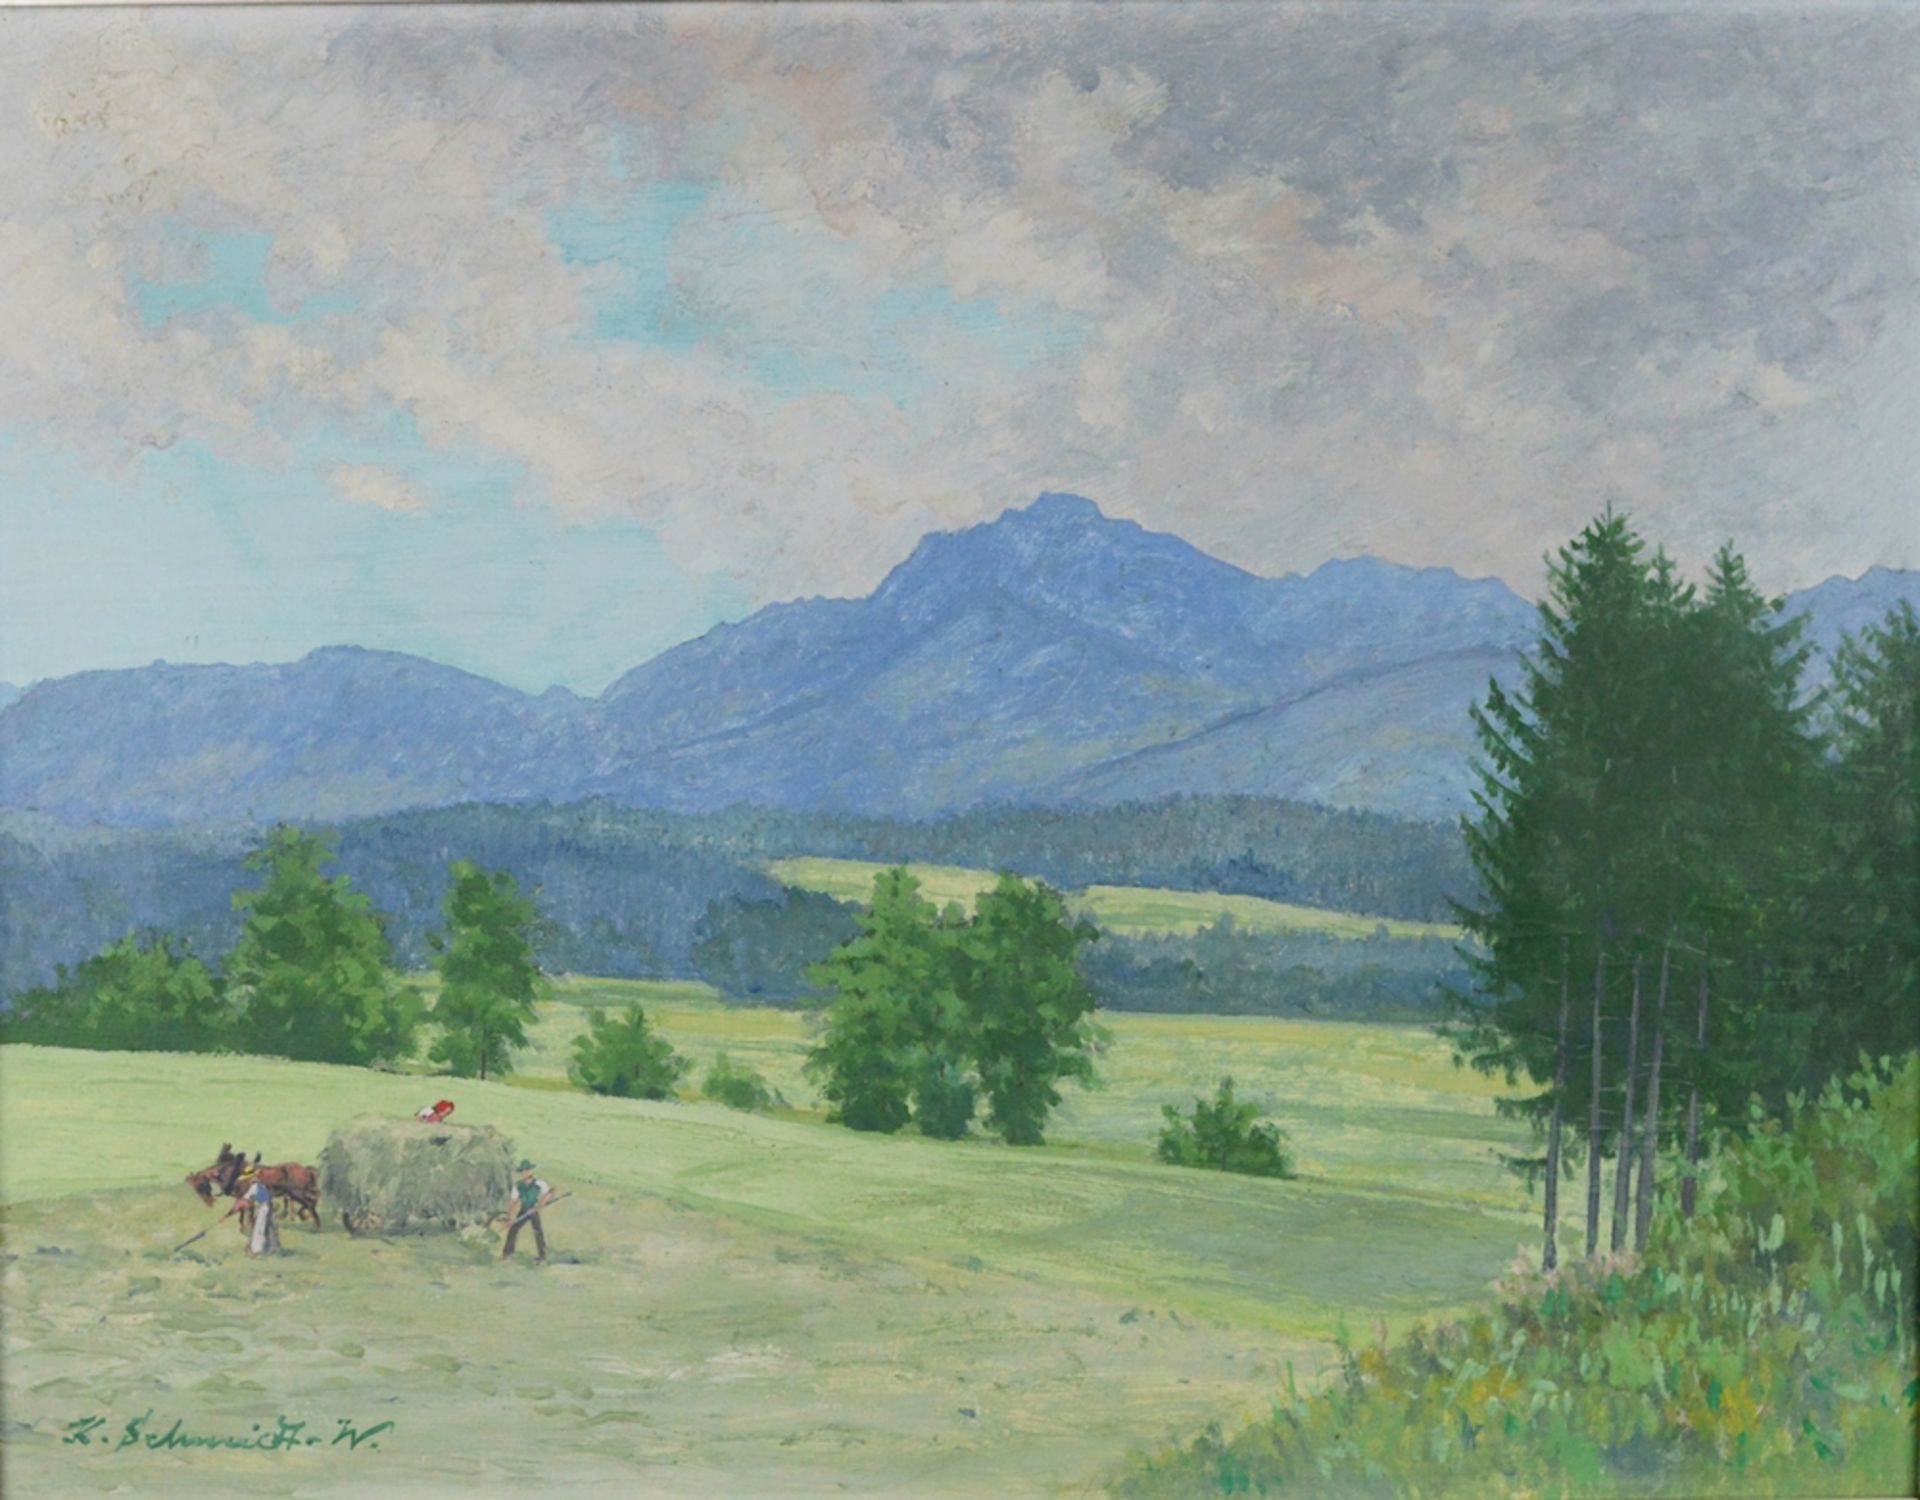 Schmidt-Wolfratshausen, Karl (1891 - 1971) "Landschaftsausblick" mit Bergen im Hintergrund, im